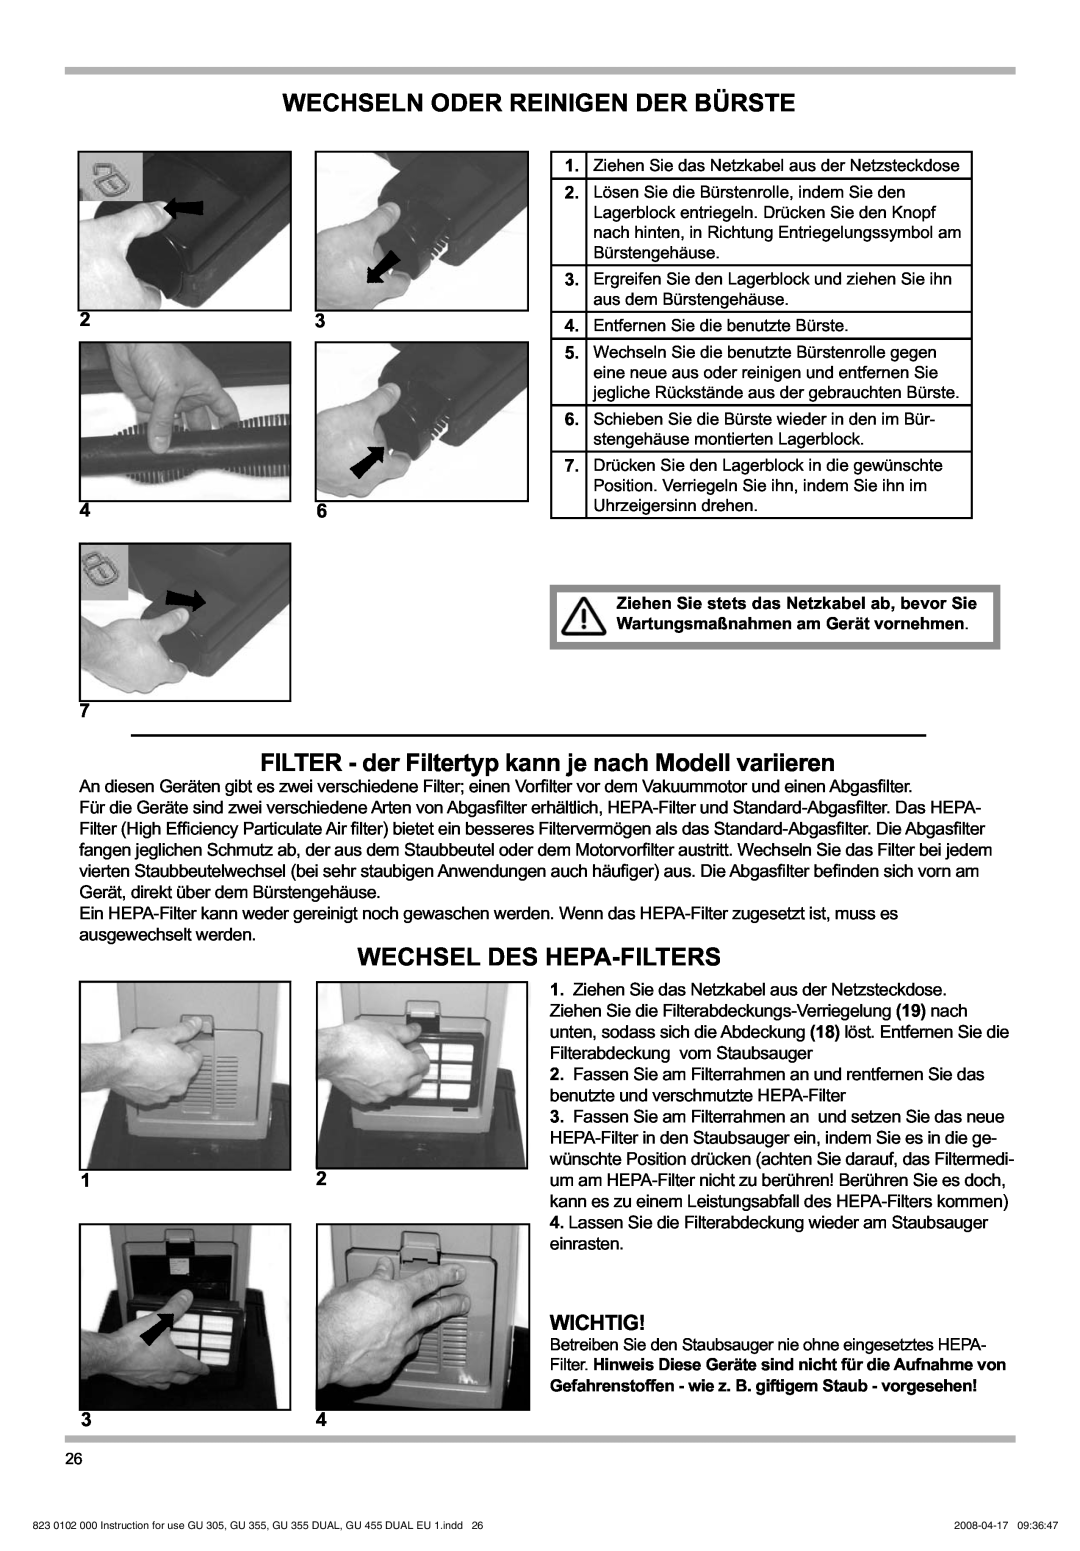 Nilfisk-Advance America GU 12 DMU, GU 305 manual Wechseln Oder Reinigen Der Bürste, Wechsel Des Hepa-Filters, Wichtig, 23 46 